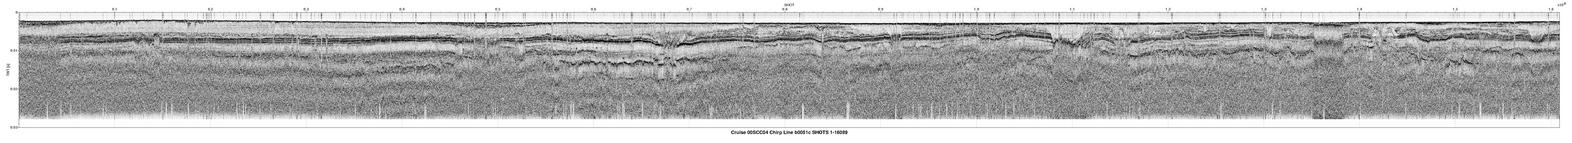 00SCC04 b0051c seismic profile image